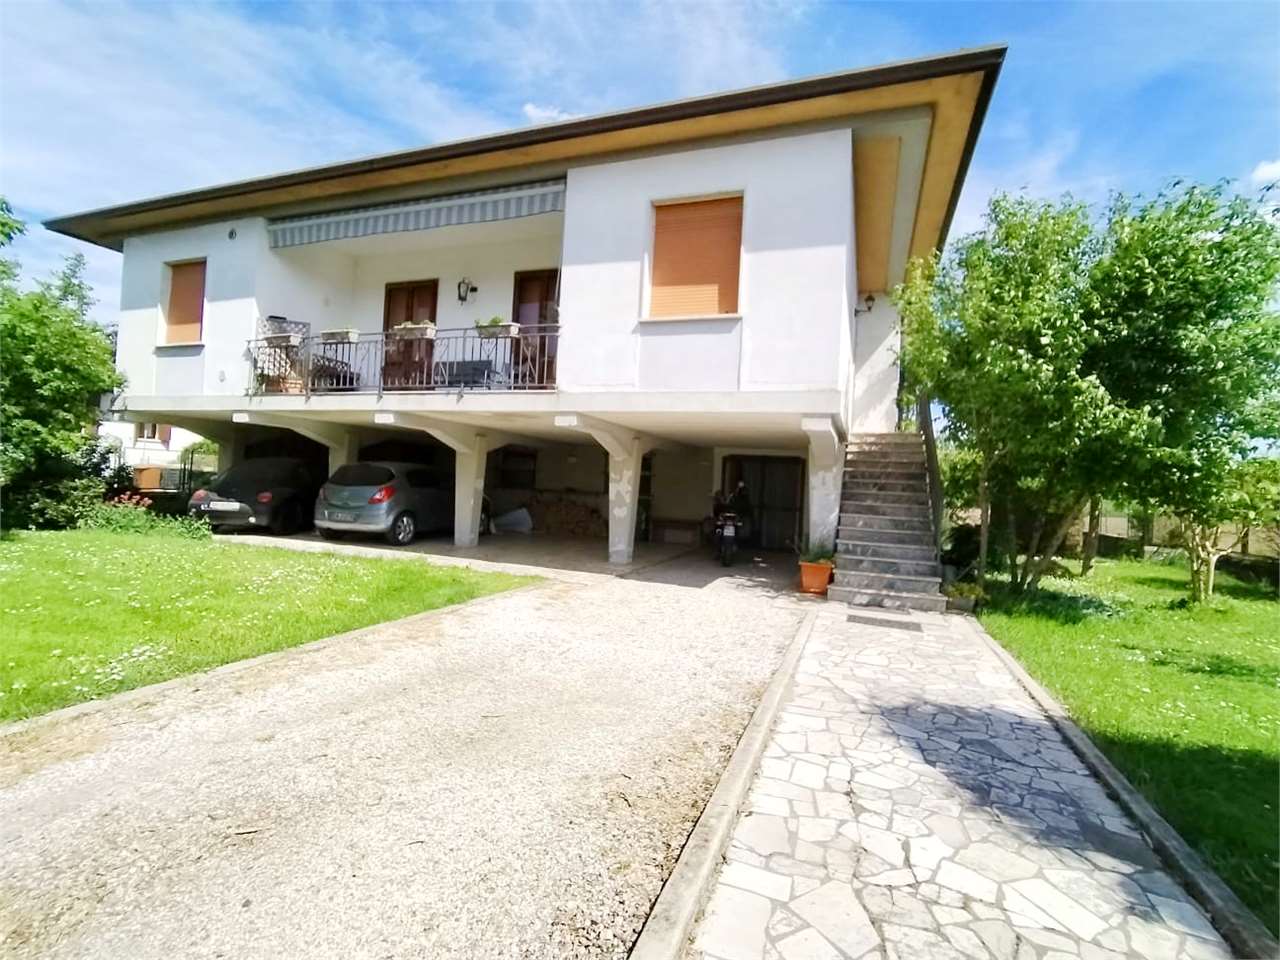 Villa in vendita a Ronco all'Adige, 7 locali, prezzo € 249.000 | PortaleAgenzieImmobiliari.it